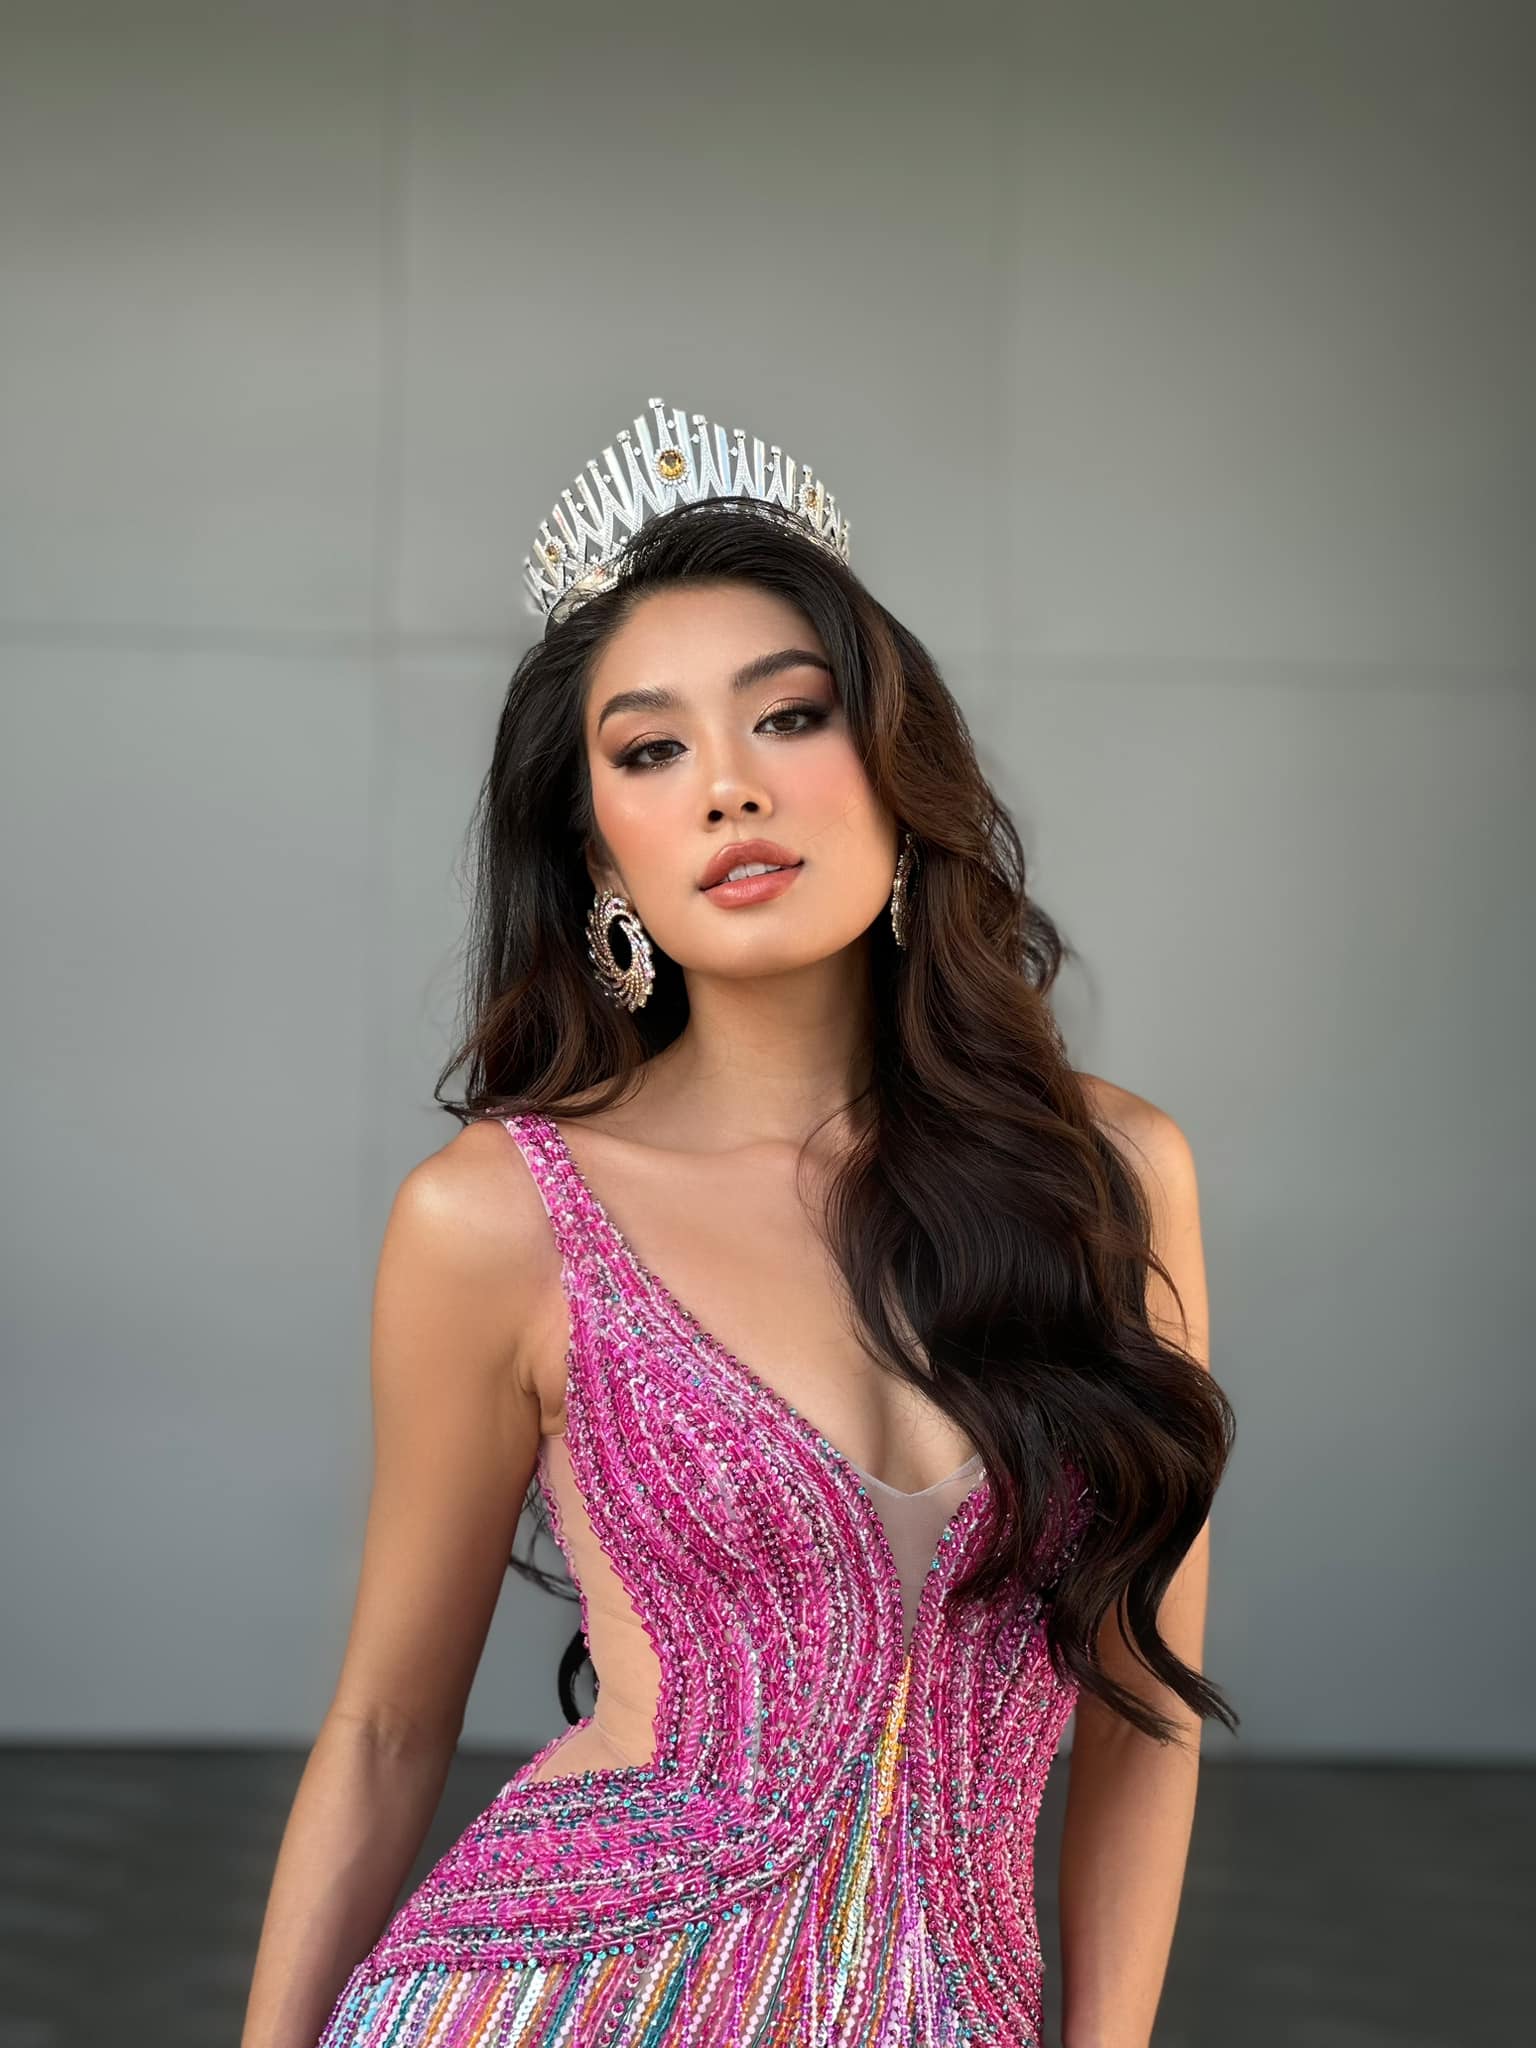 Thảo Nhi Lê chính thức mất suất thi Miss Universe, người thay thế lộ diện - ảnh 2